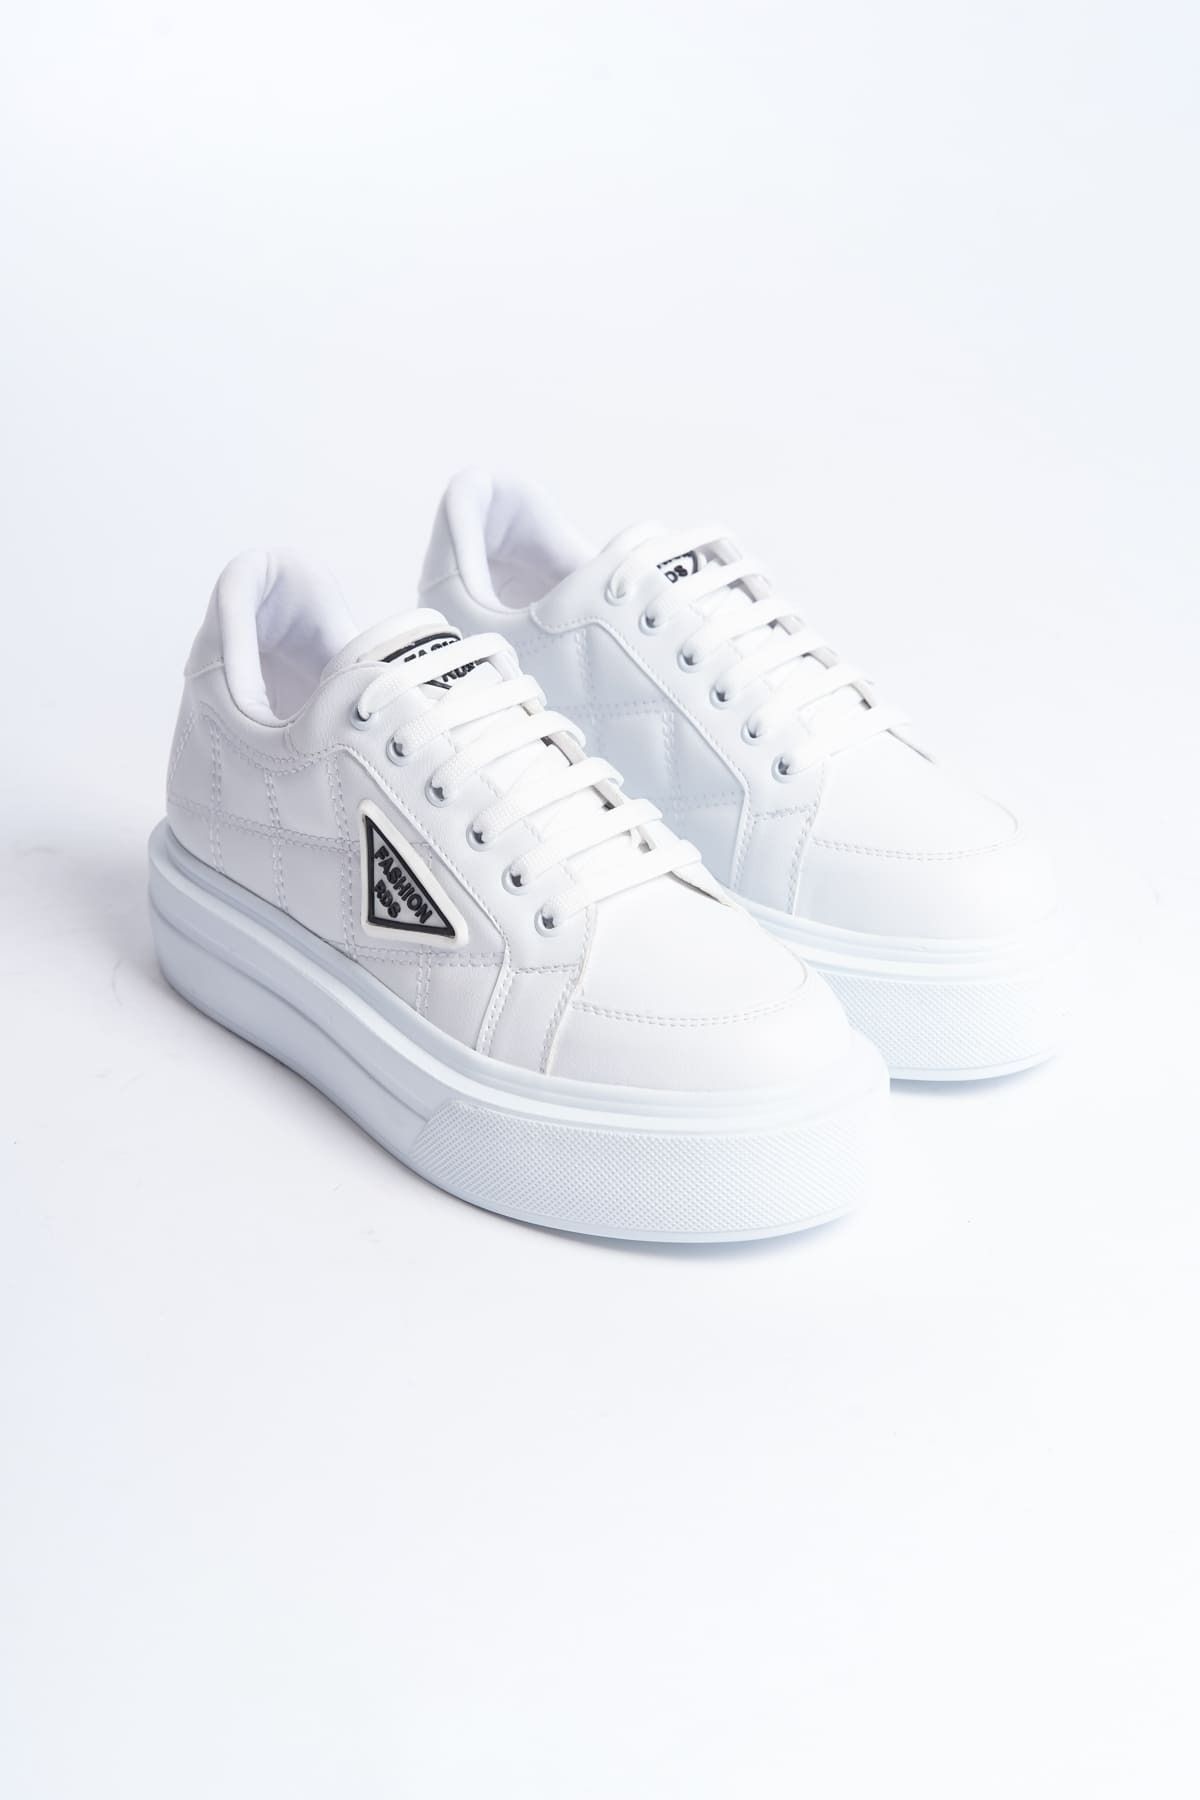 BZ Moda GRACE Bağcıklı Ortopedik Taban Desenli Kadın Sneaker Ayakkabı BT Beyaz